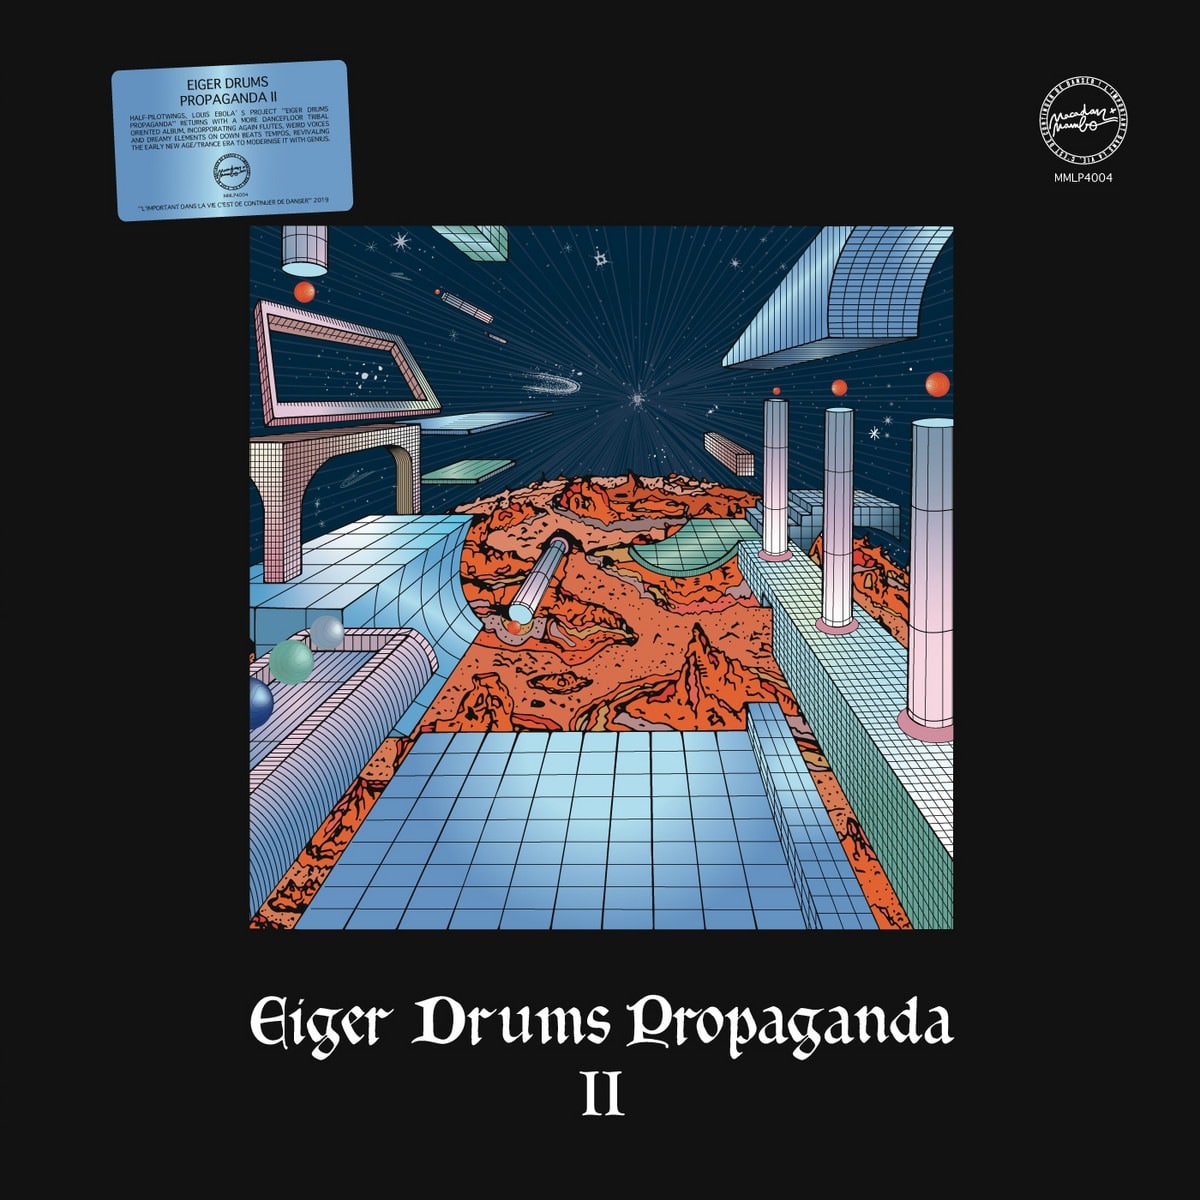 Eiger Drums Propaganda - Eiger Drums Propaganda II - MMLP4004 - MACADAM MAMBO